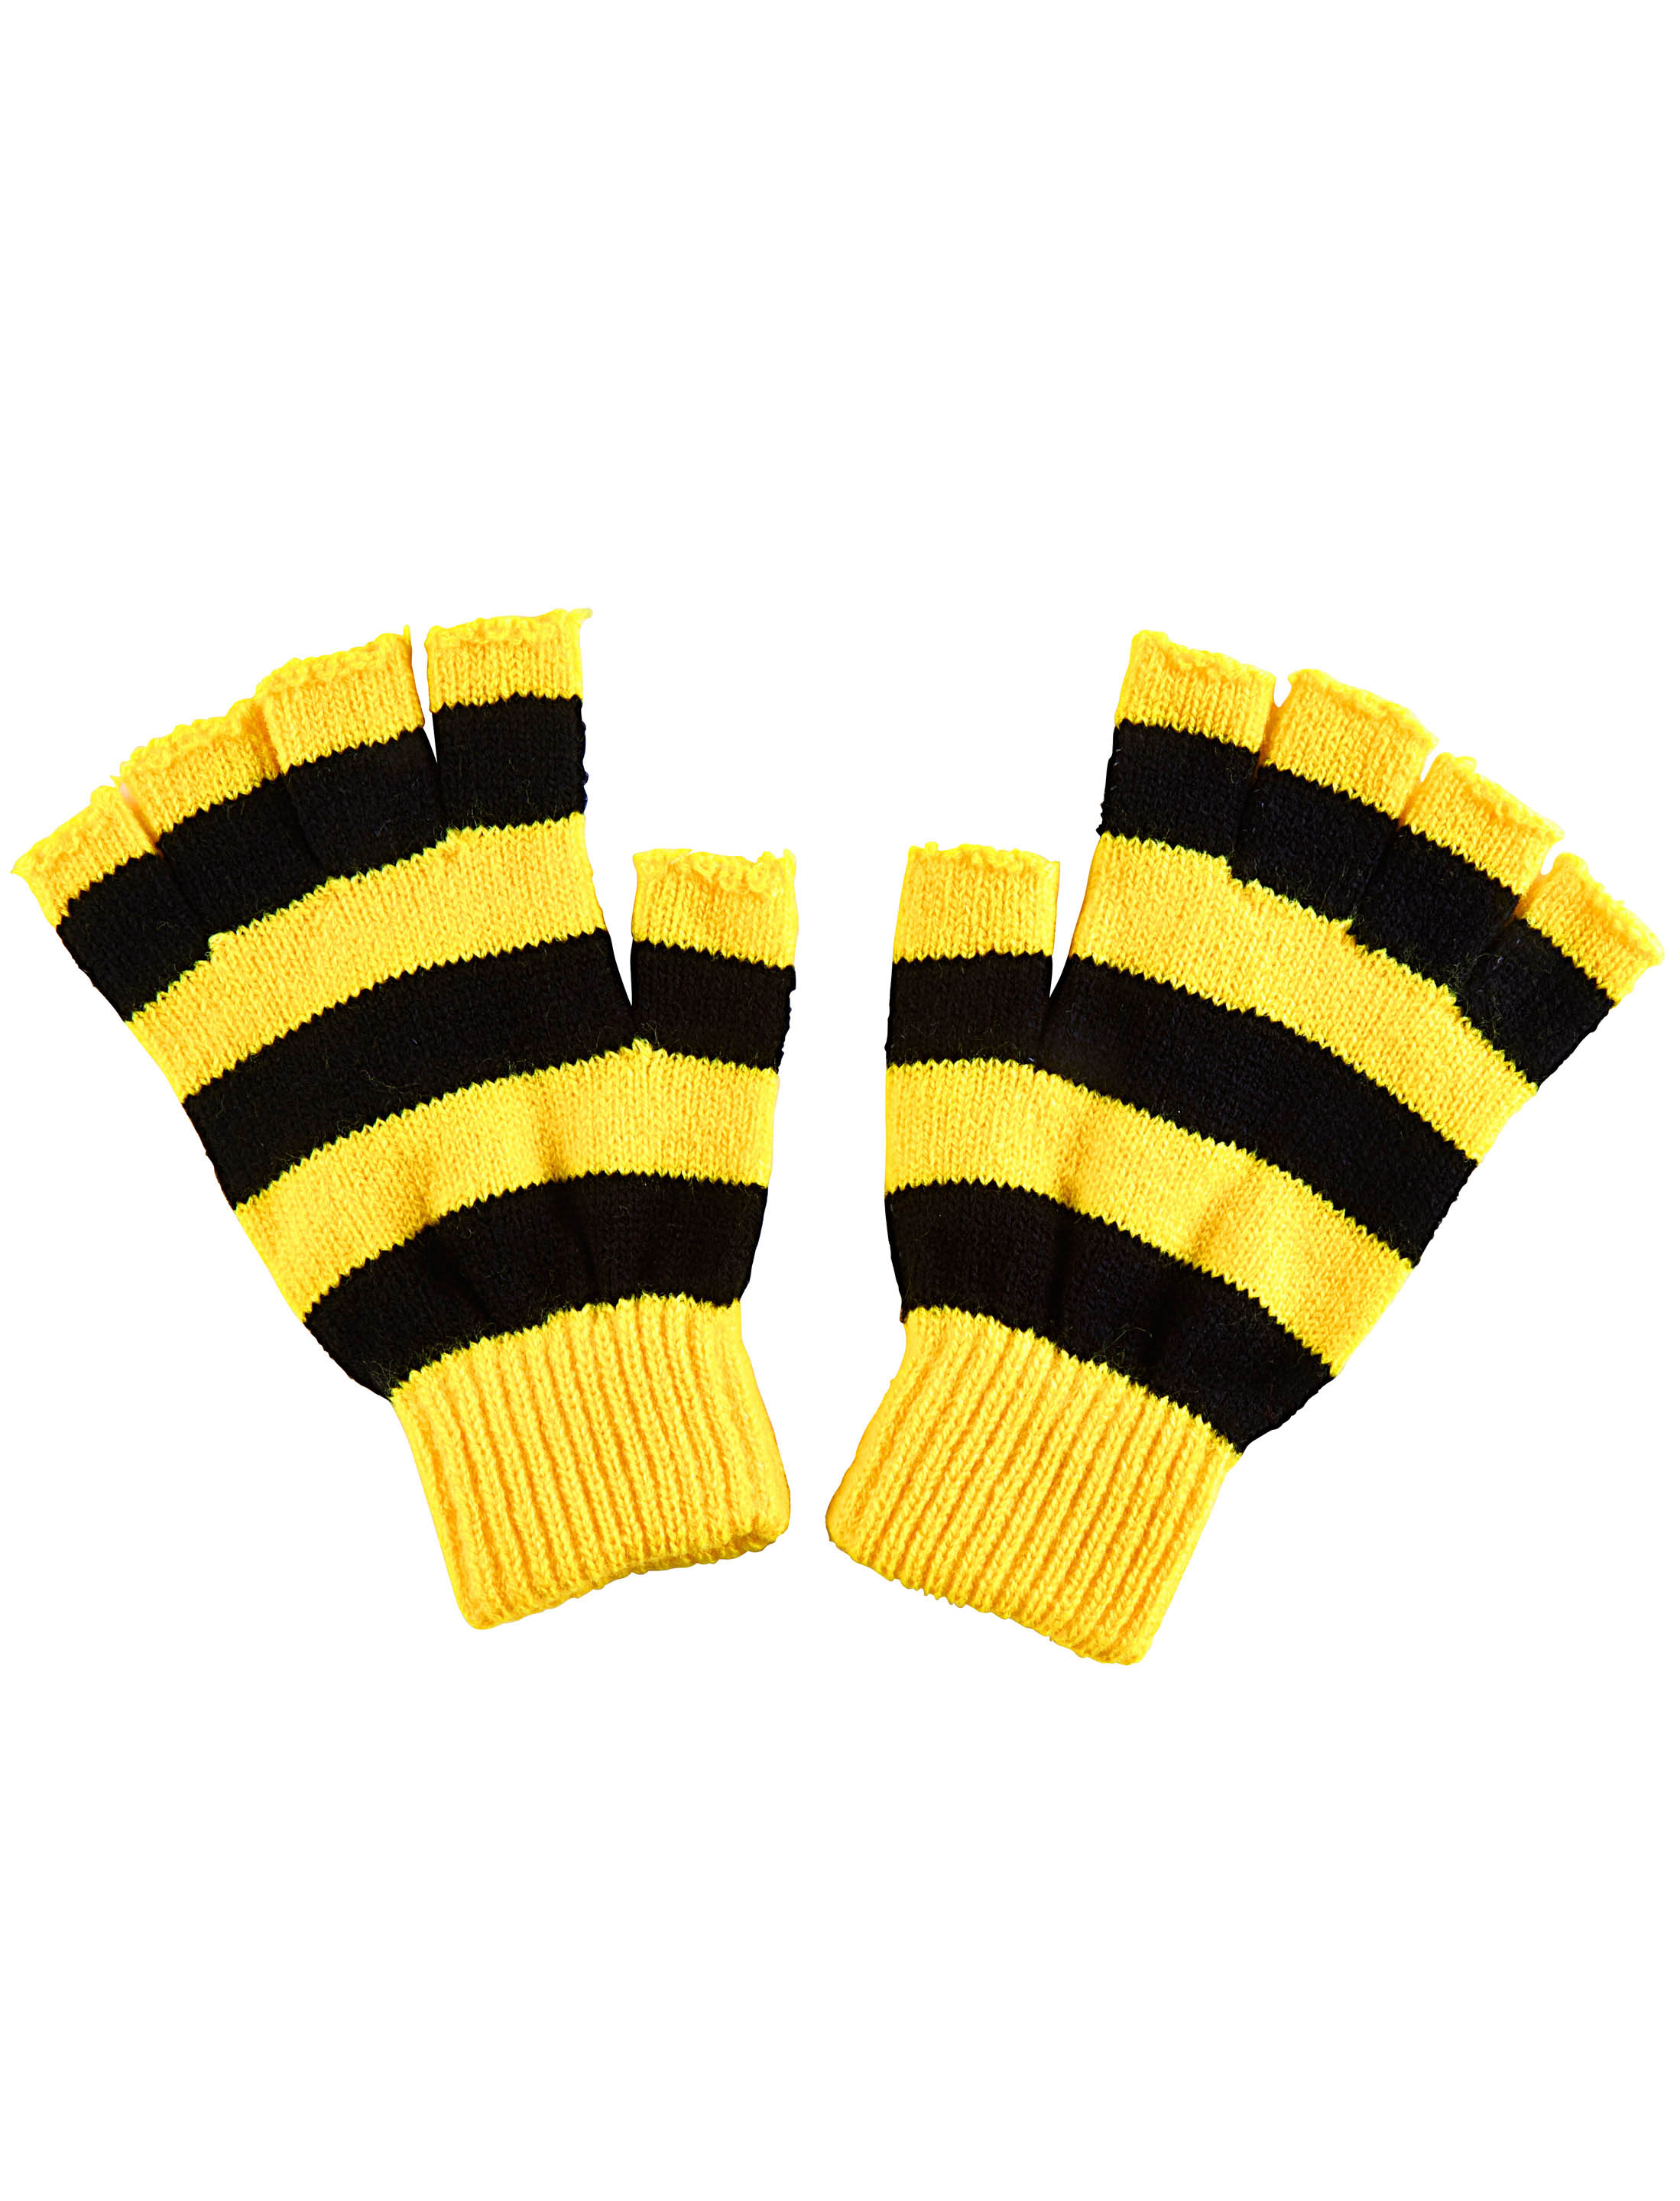 Strickhandschuhe fingerlos schwarz/gelb